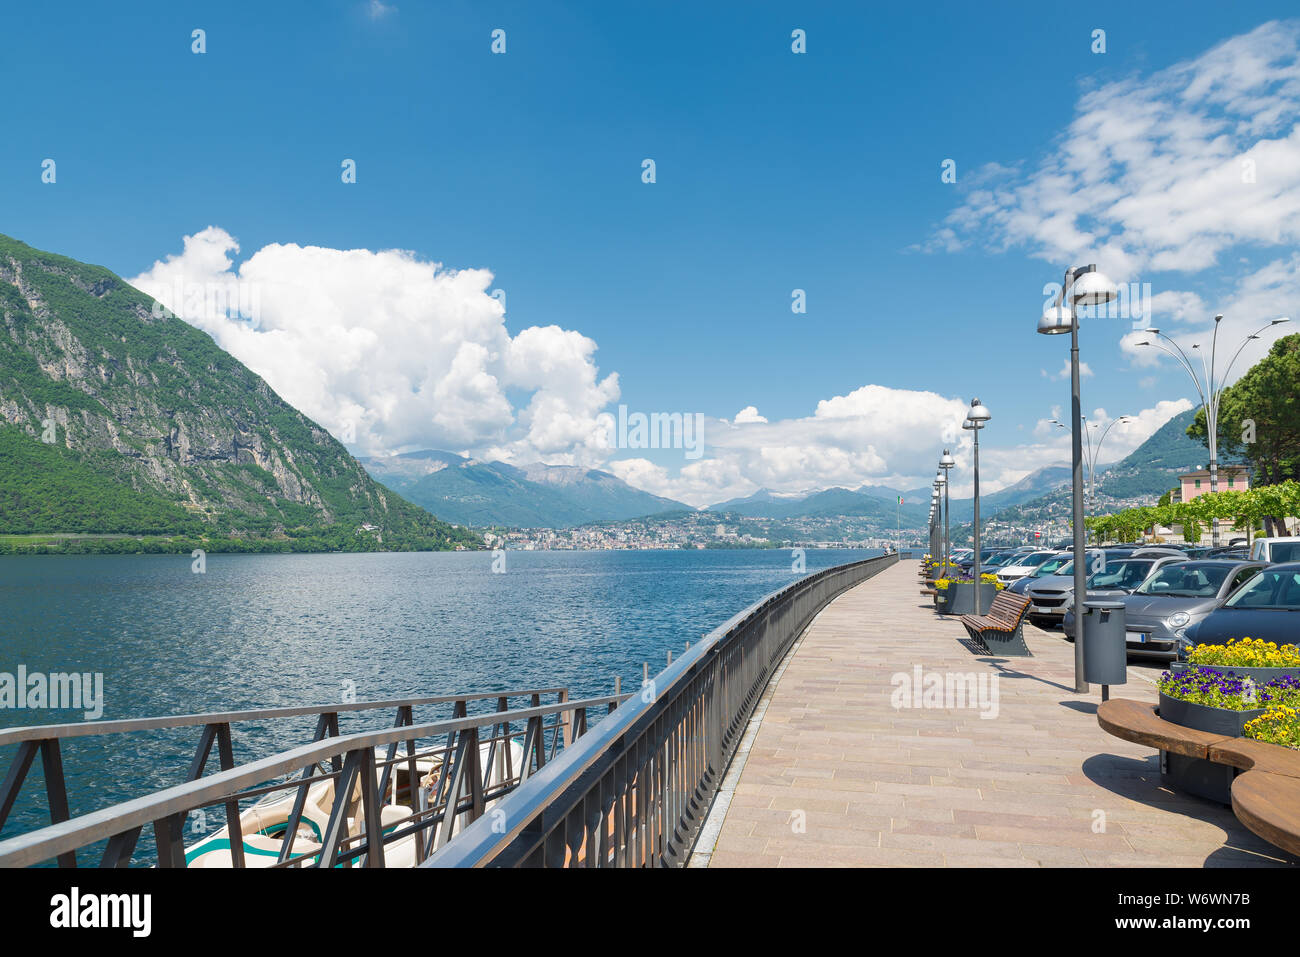 Le lac de Lugano et de Campione d'Italia, Italie. Ville connue pour le casino. Promenade au bord du lac et la ville de Lugano à l'arrière-plan, paysage d'été Banque D'Images